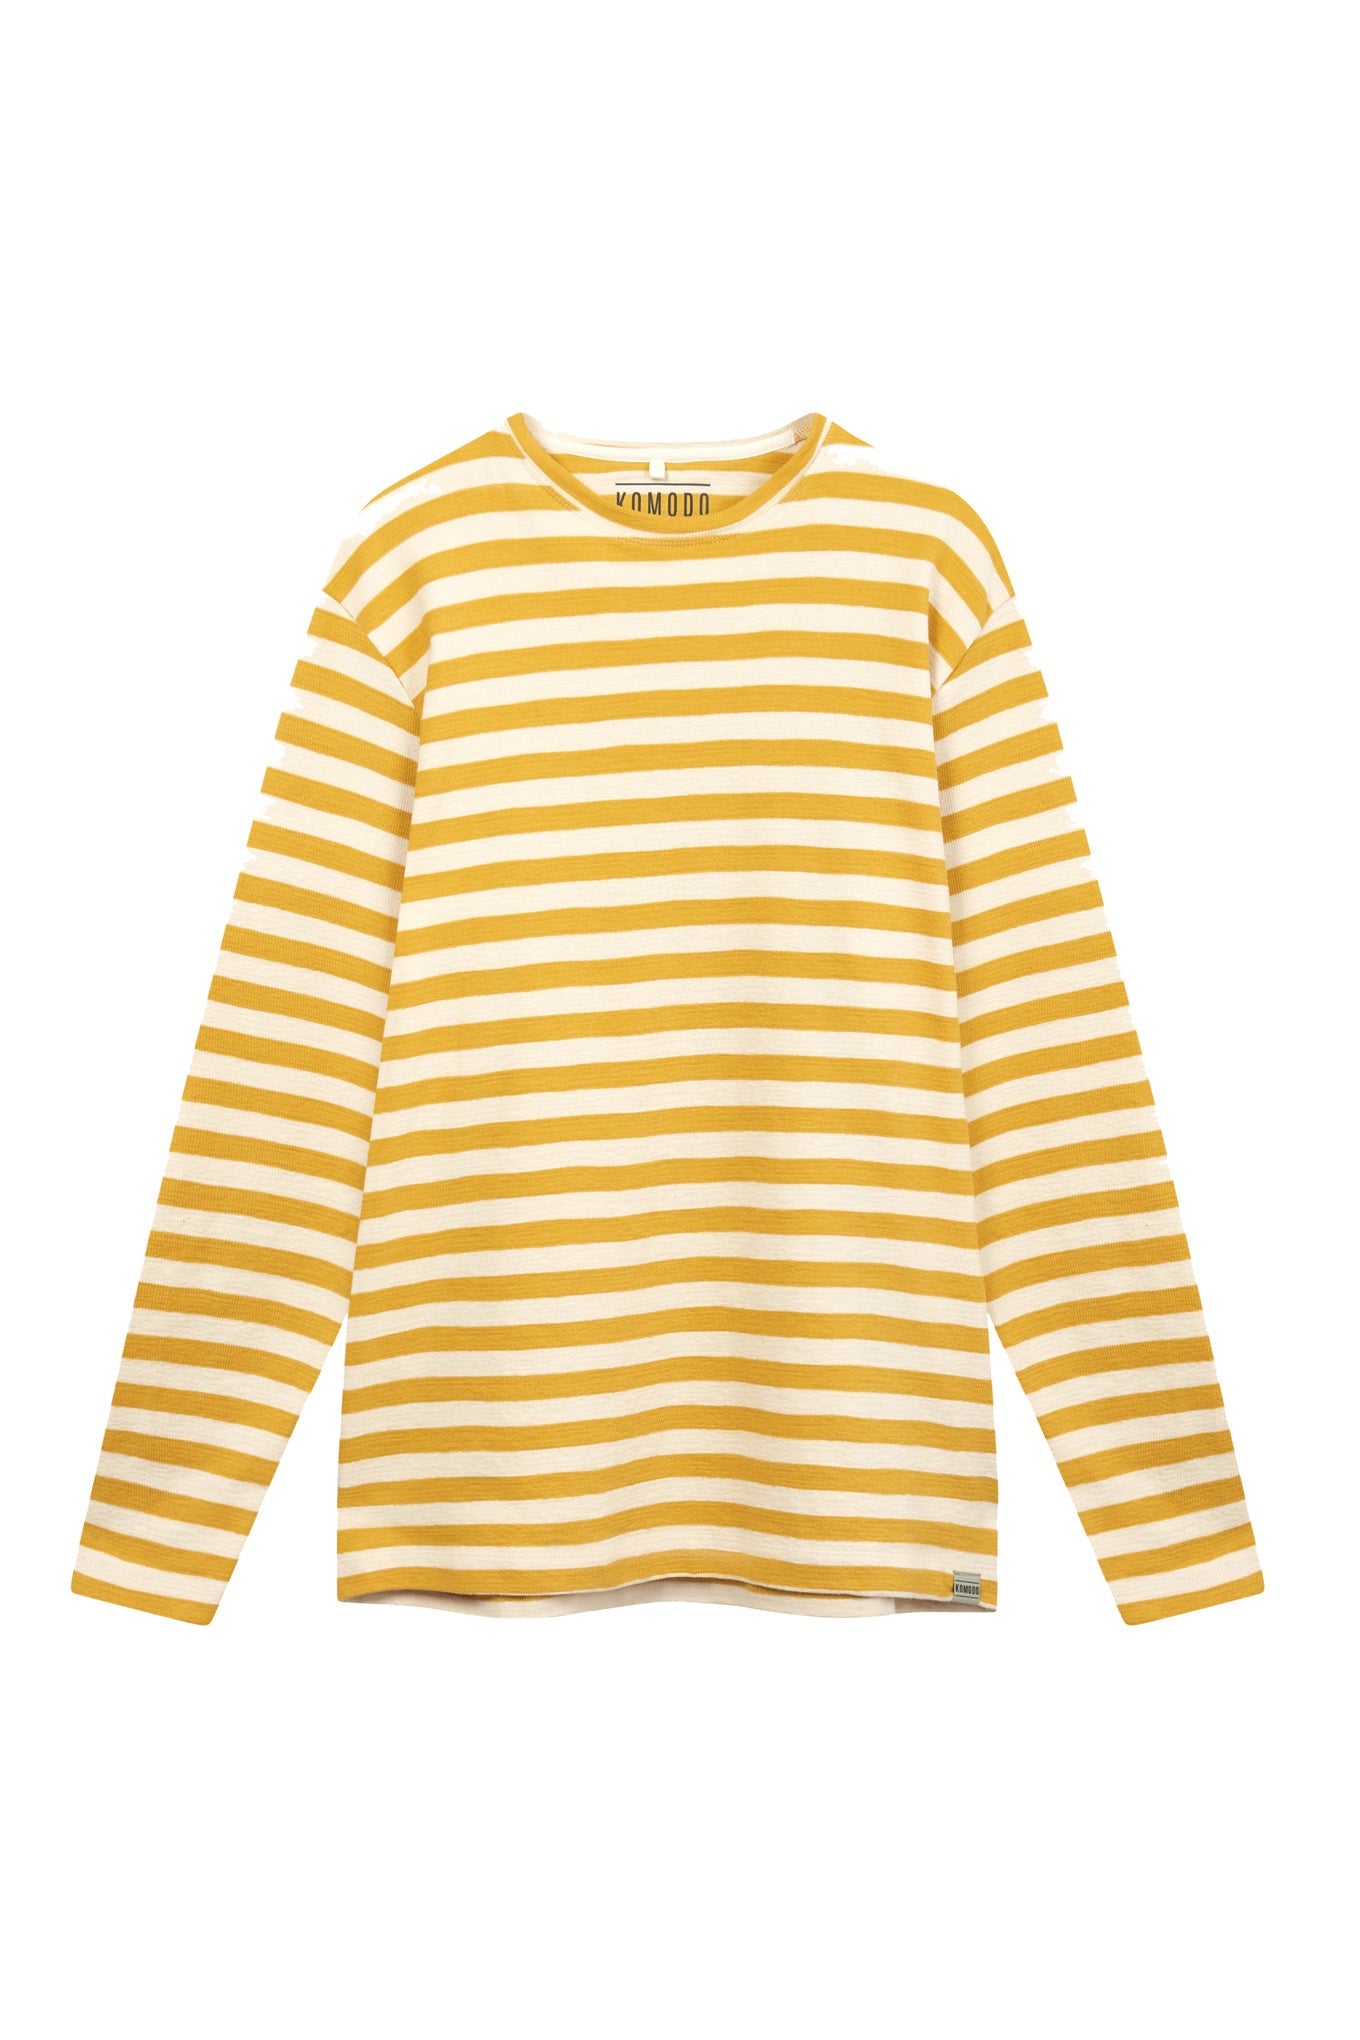 Gelb gestreifter Sweater HAKON aus 100% Bio-Baumwolle von Komodo